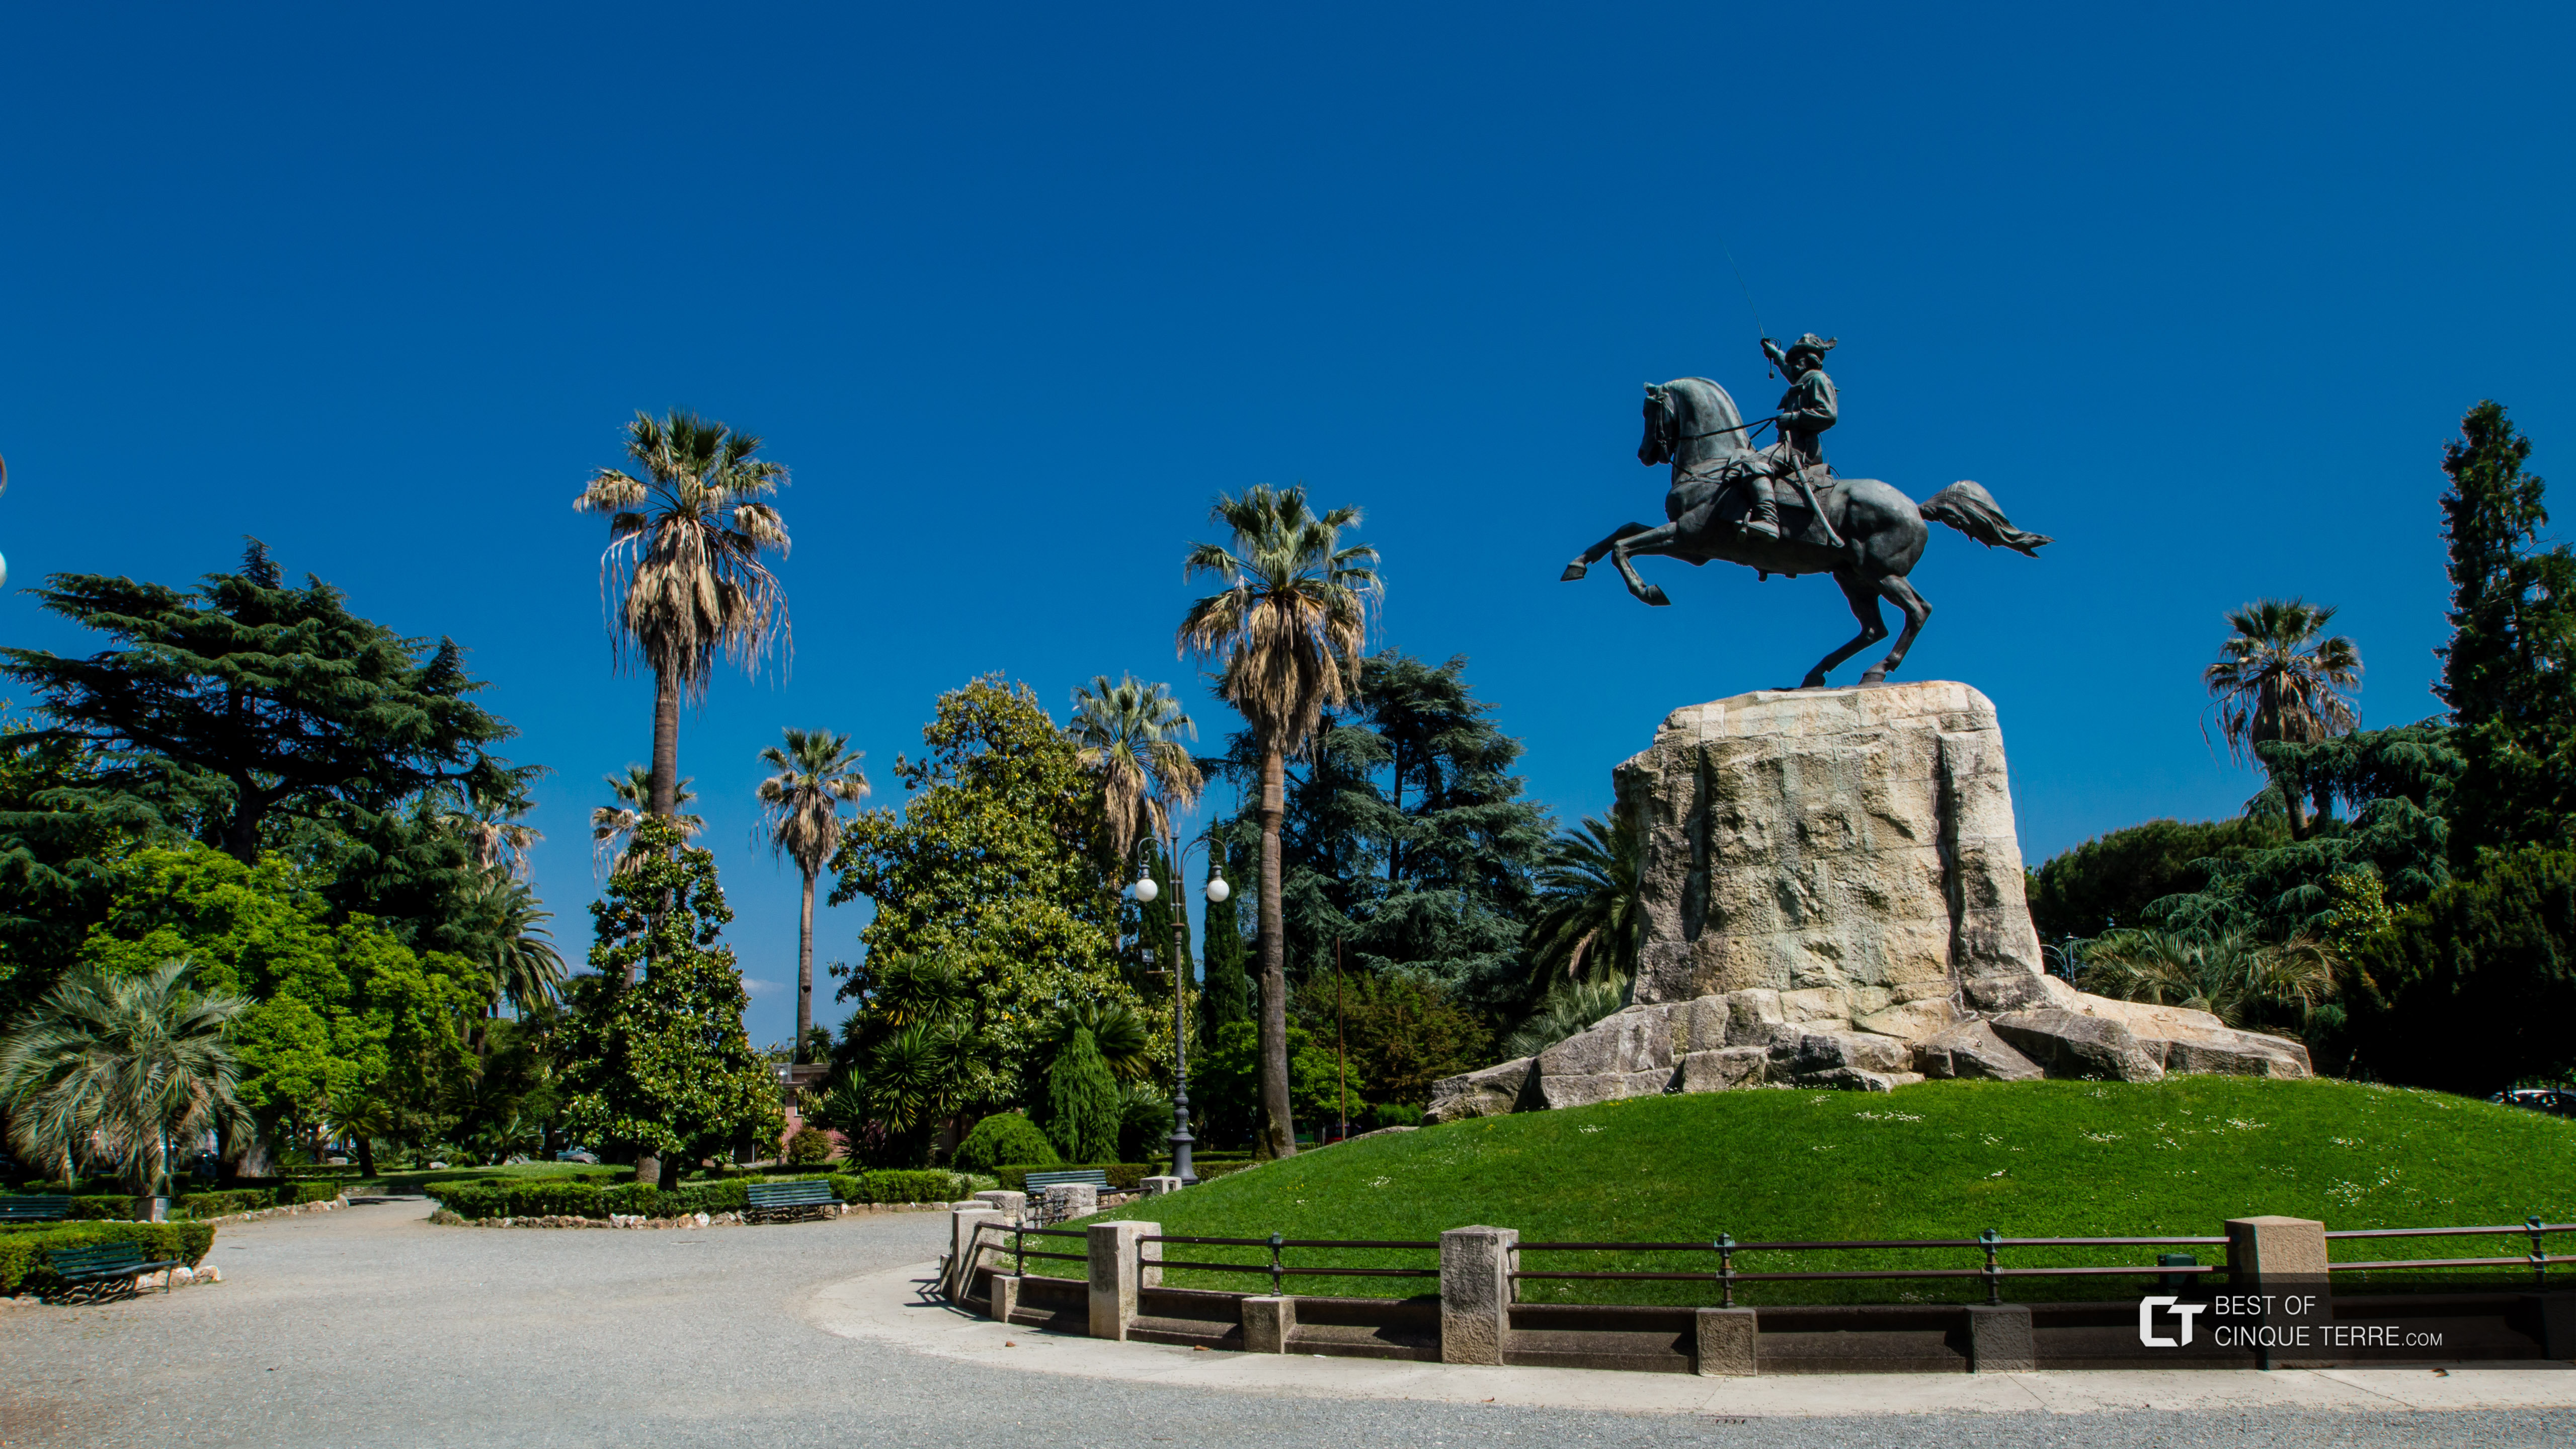 Monumento a Giuseppe Garibaldi no parque próximo à Orla, La Spezia, Itália